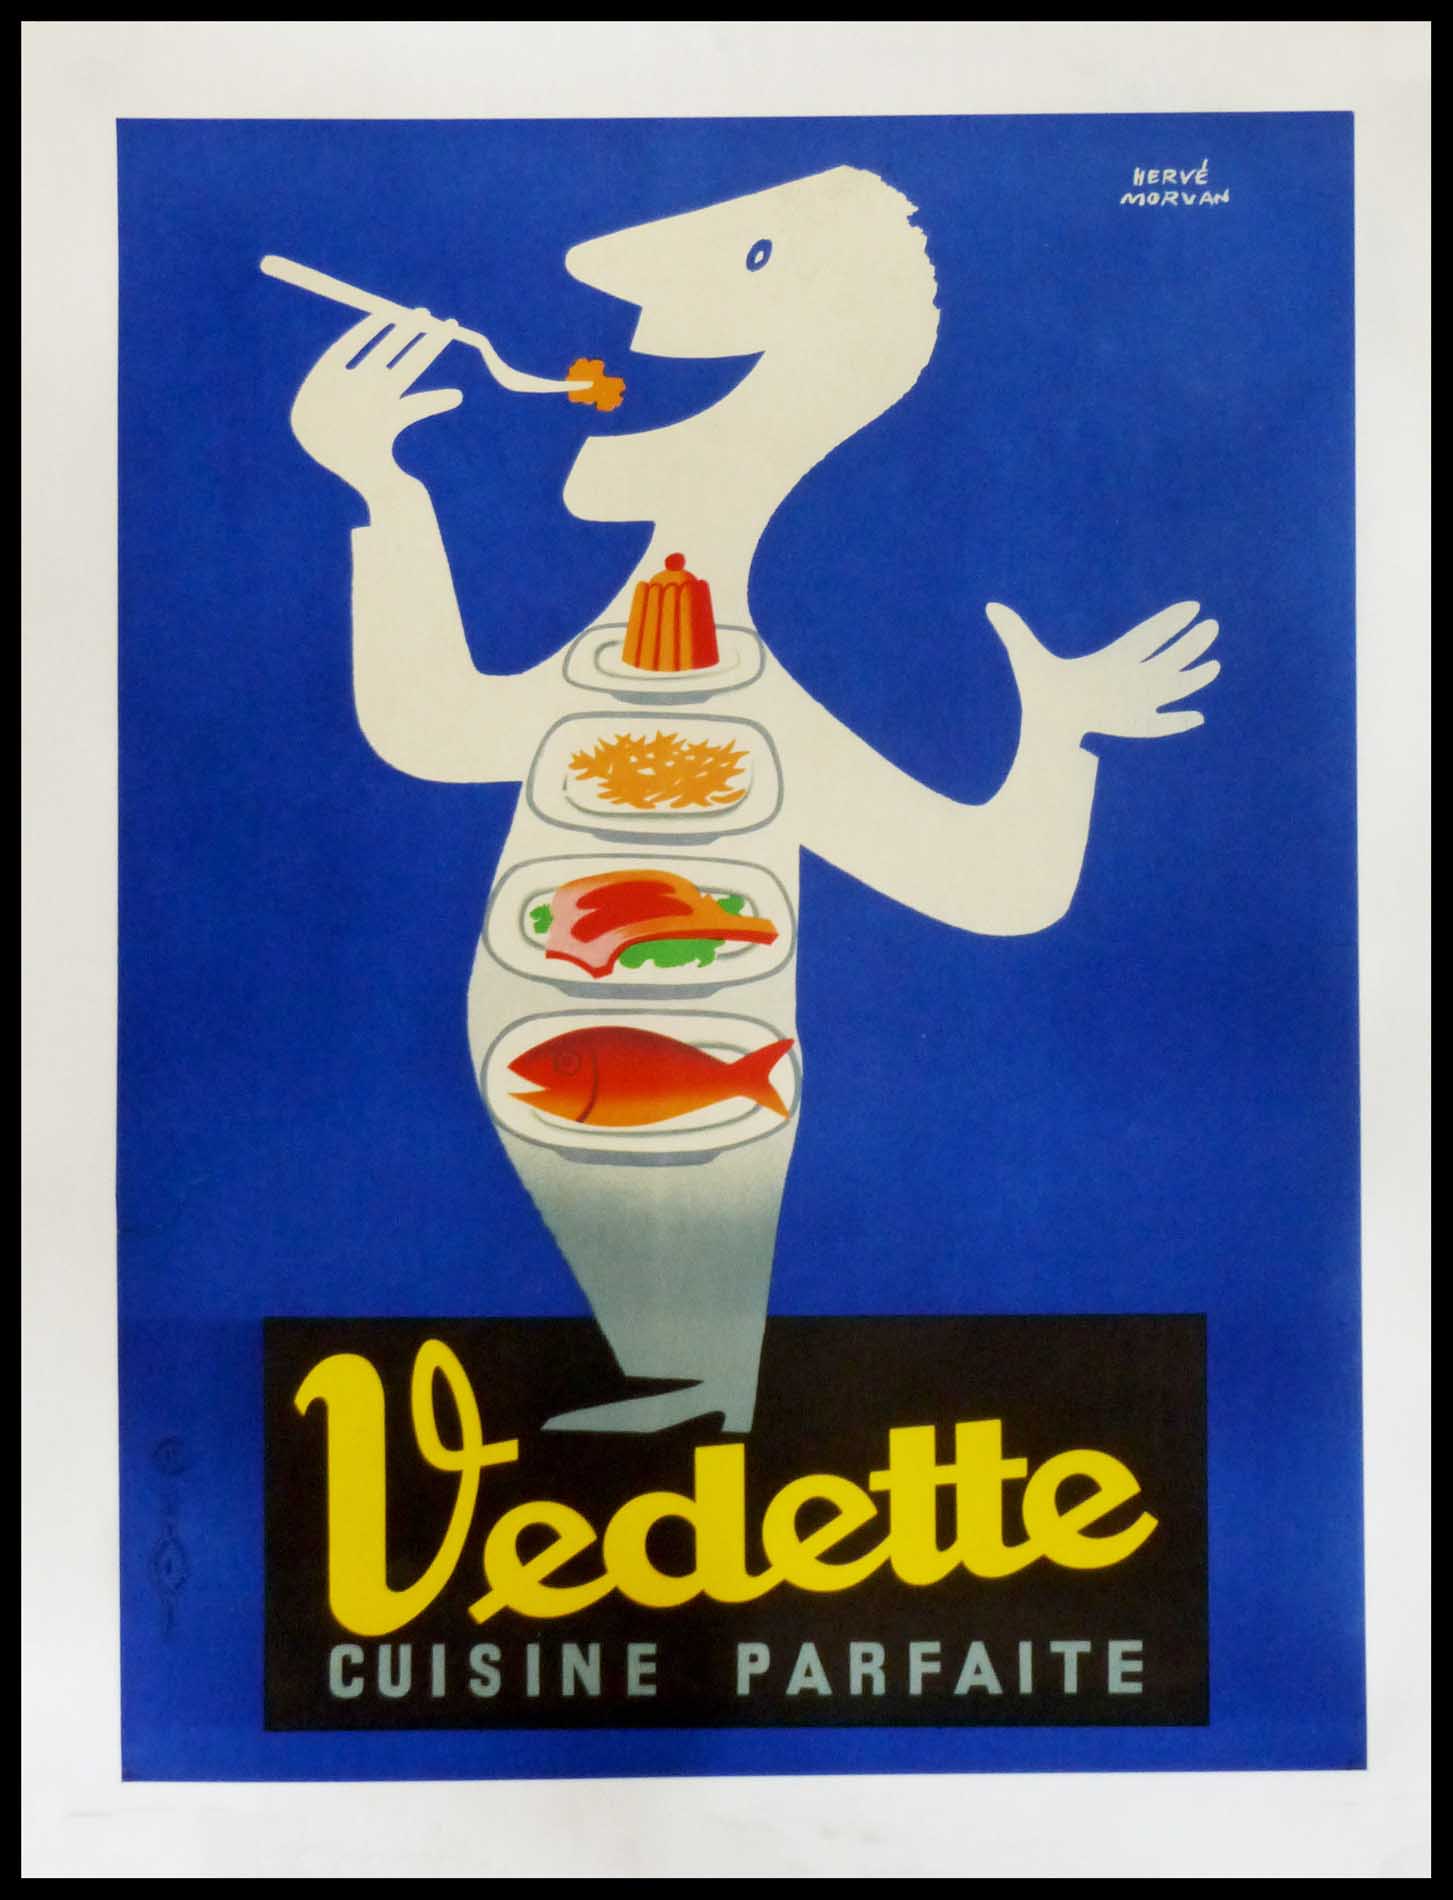 Hervé MORVAN - Vedette cuisine parfaite, original vintage poster, circa 1950